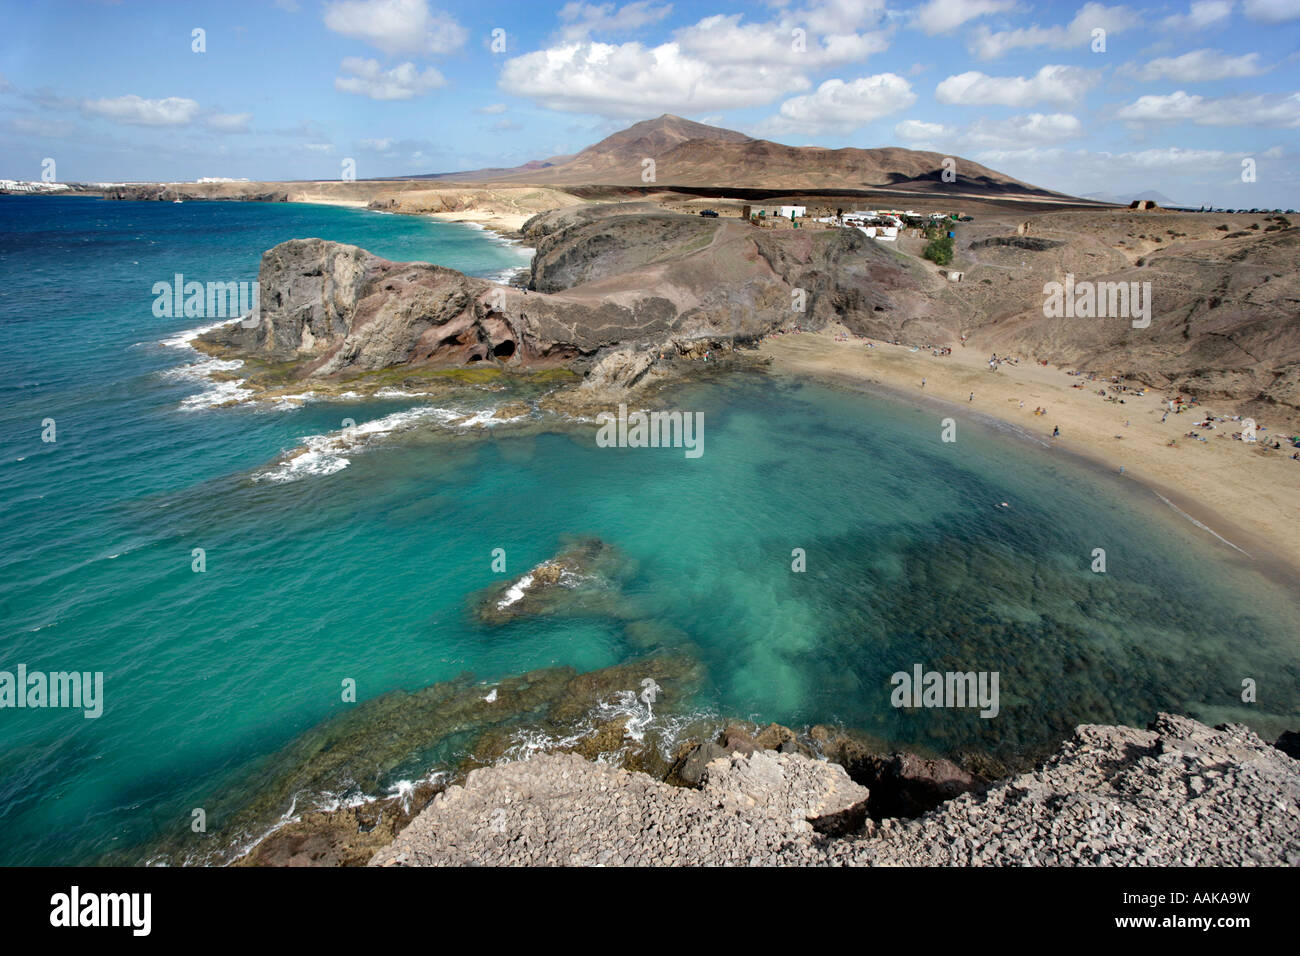 Playa Papagayo beach, à l'extrémité sud de Lanzarote, une île des Canaries Playa Mujeres est visible dans l'arrière-plan Banque D'Images